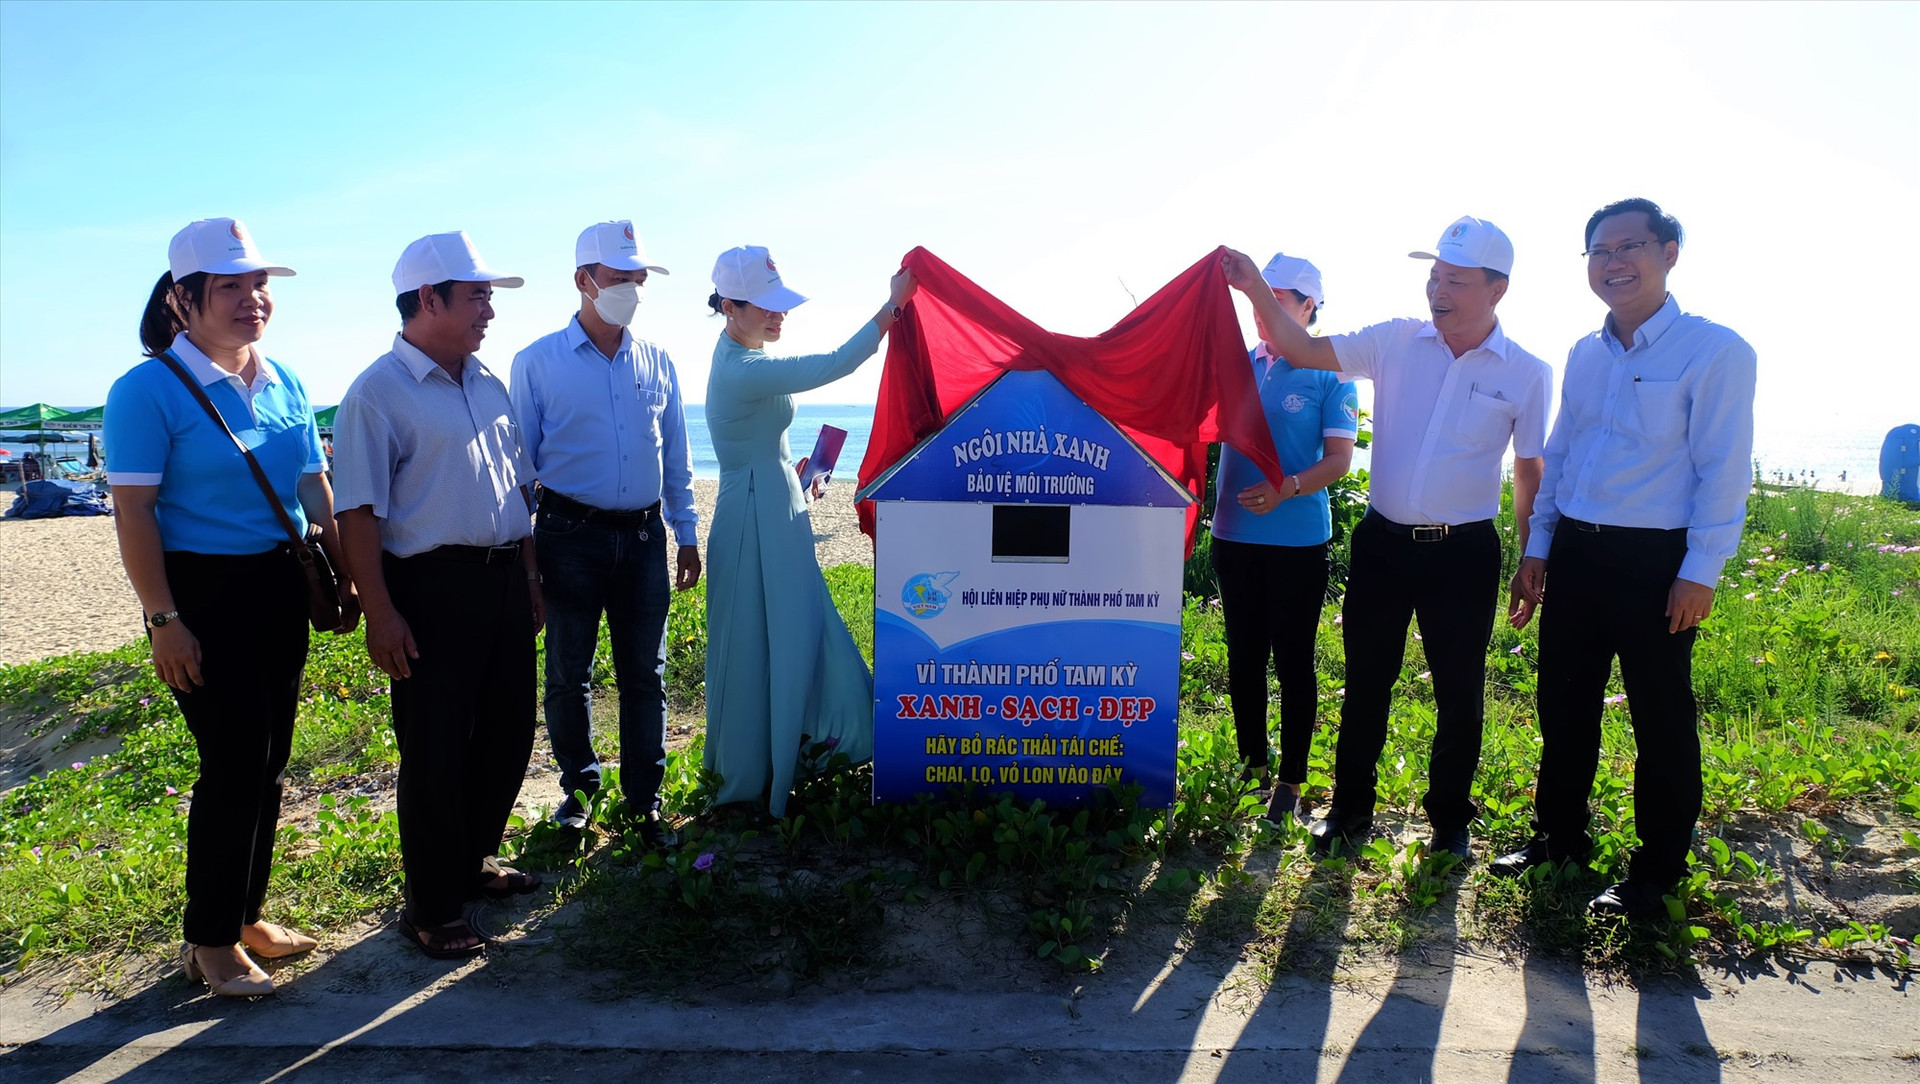 Mô hình Ngôi nhà xanh - bảo vệ môi trường được đặt tại bãi biển Hạ Thanh và những nơi công cộng. Ảnh: M.L